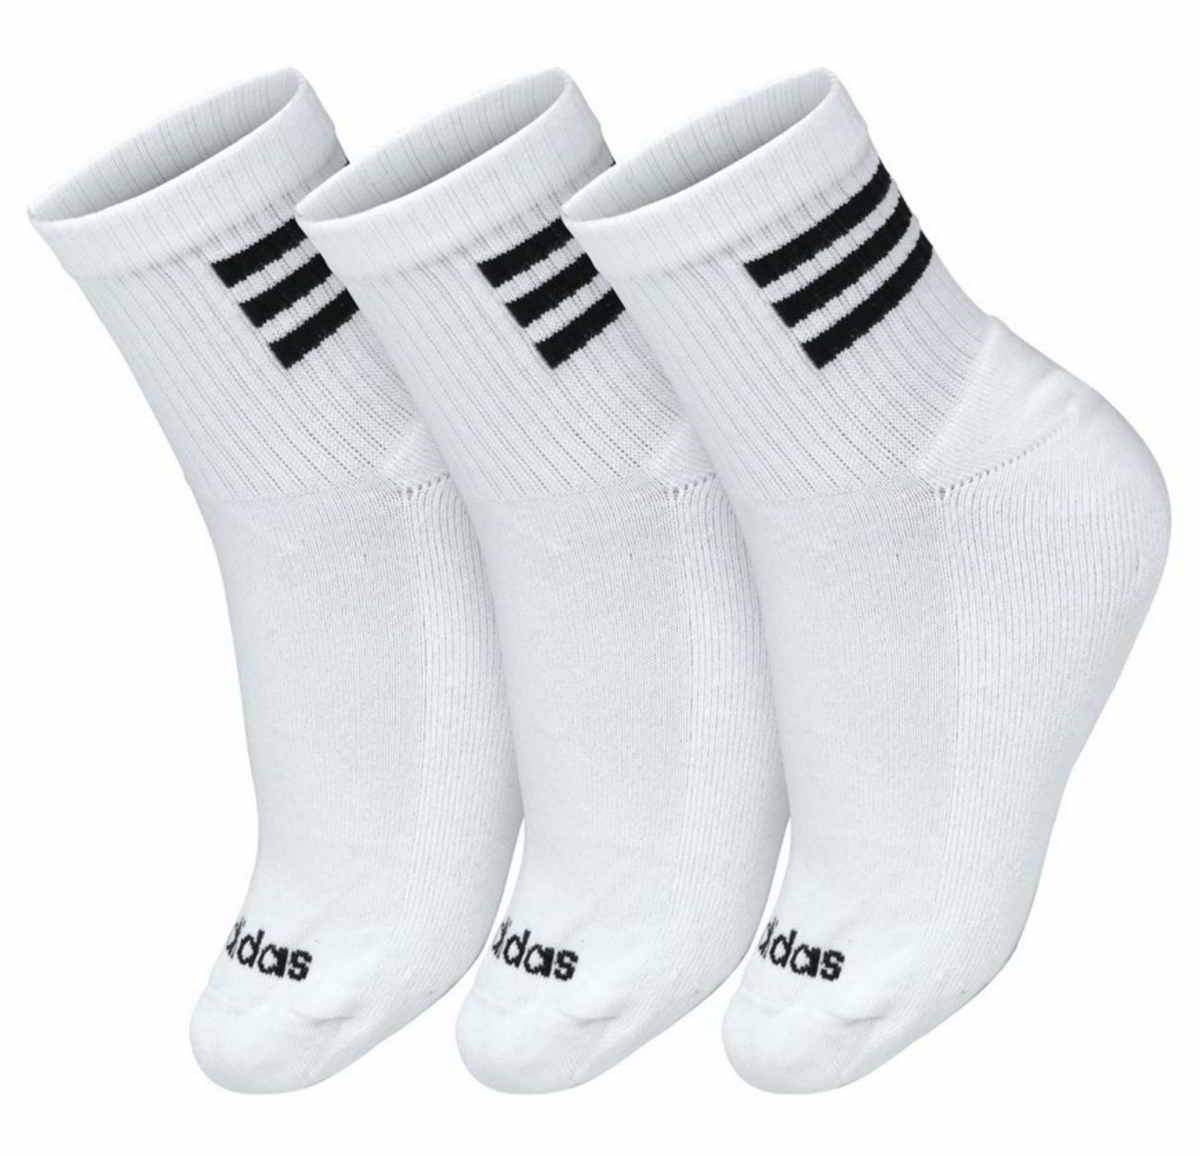 Socken HC 3S Quart Pack weiß